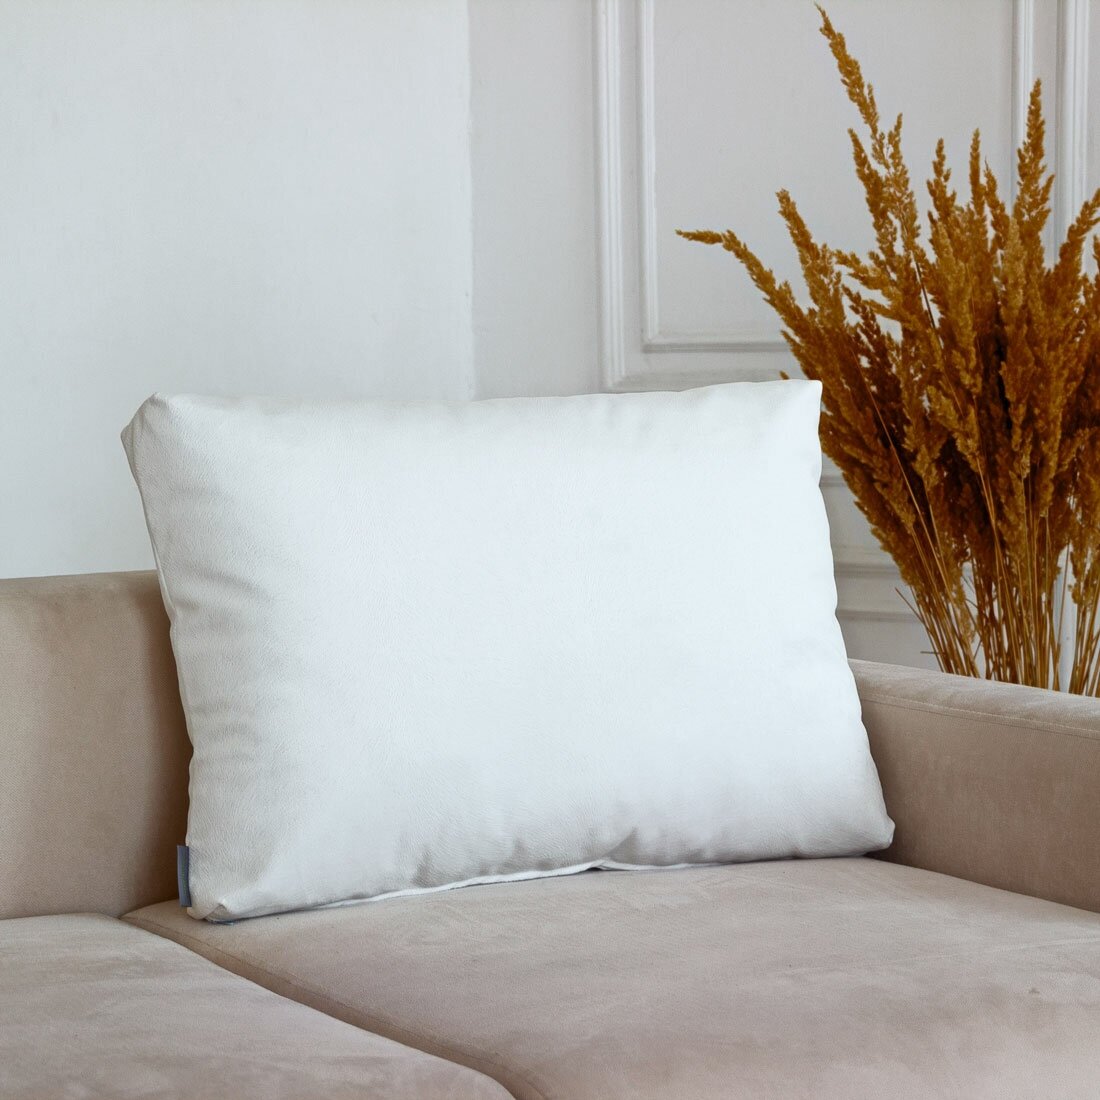 Большая диванная подушка, подушка на спинку кровати, подушка для дивана Софт Белый 62*42 см